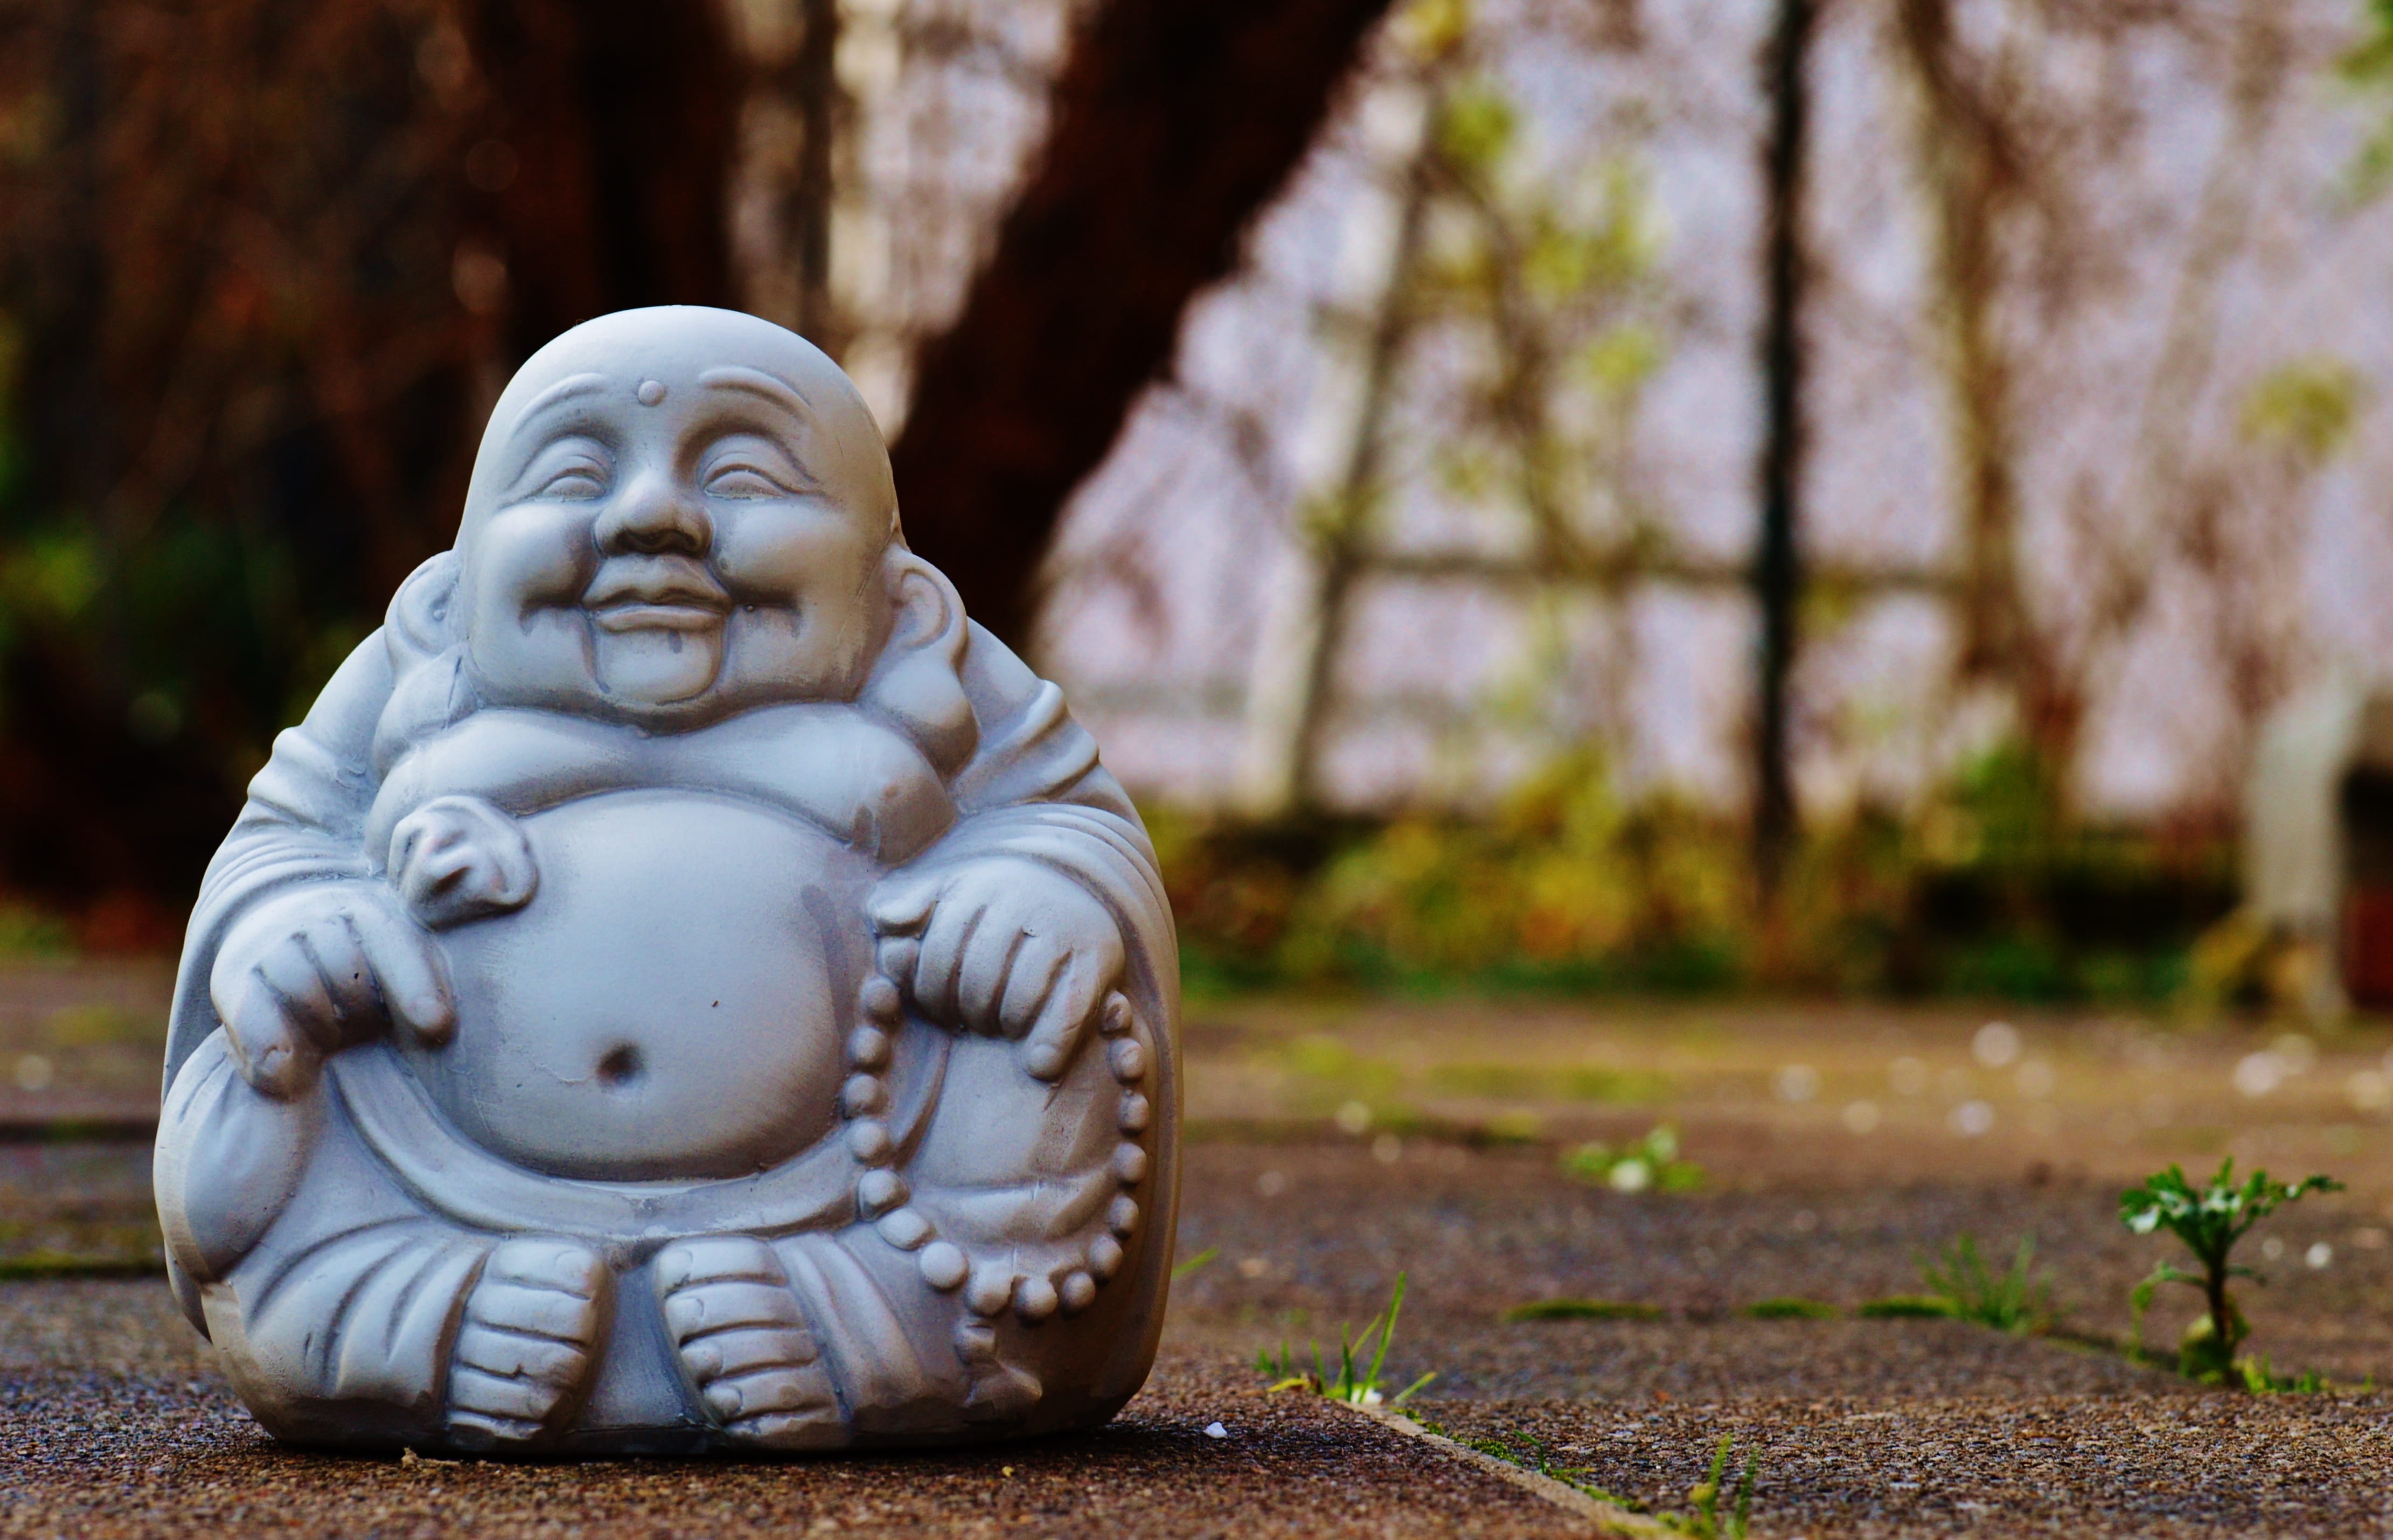 Laughing Buddha ceramic figurine, figure, rest, buddhism, fernöstlich